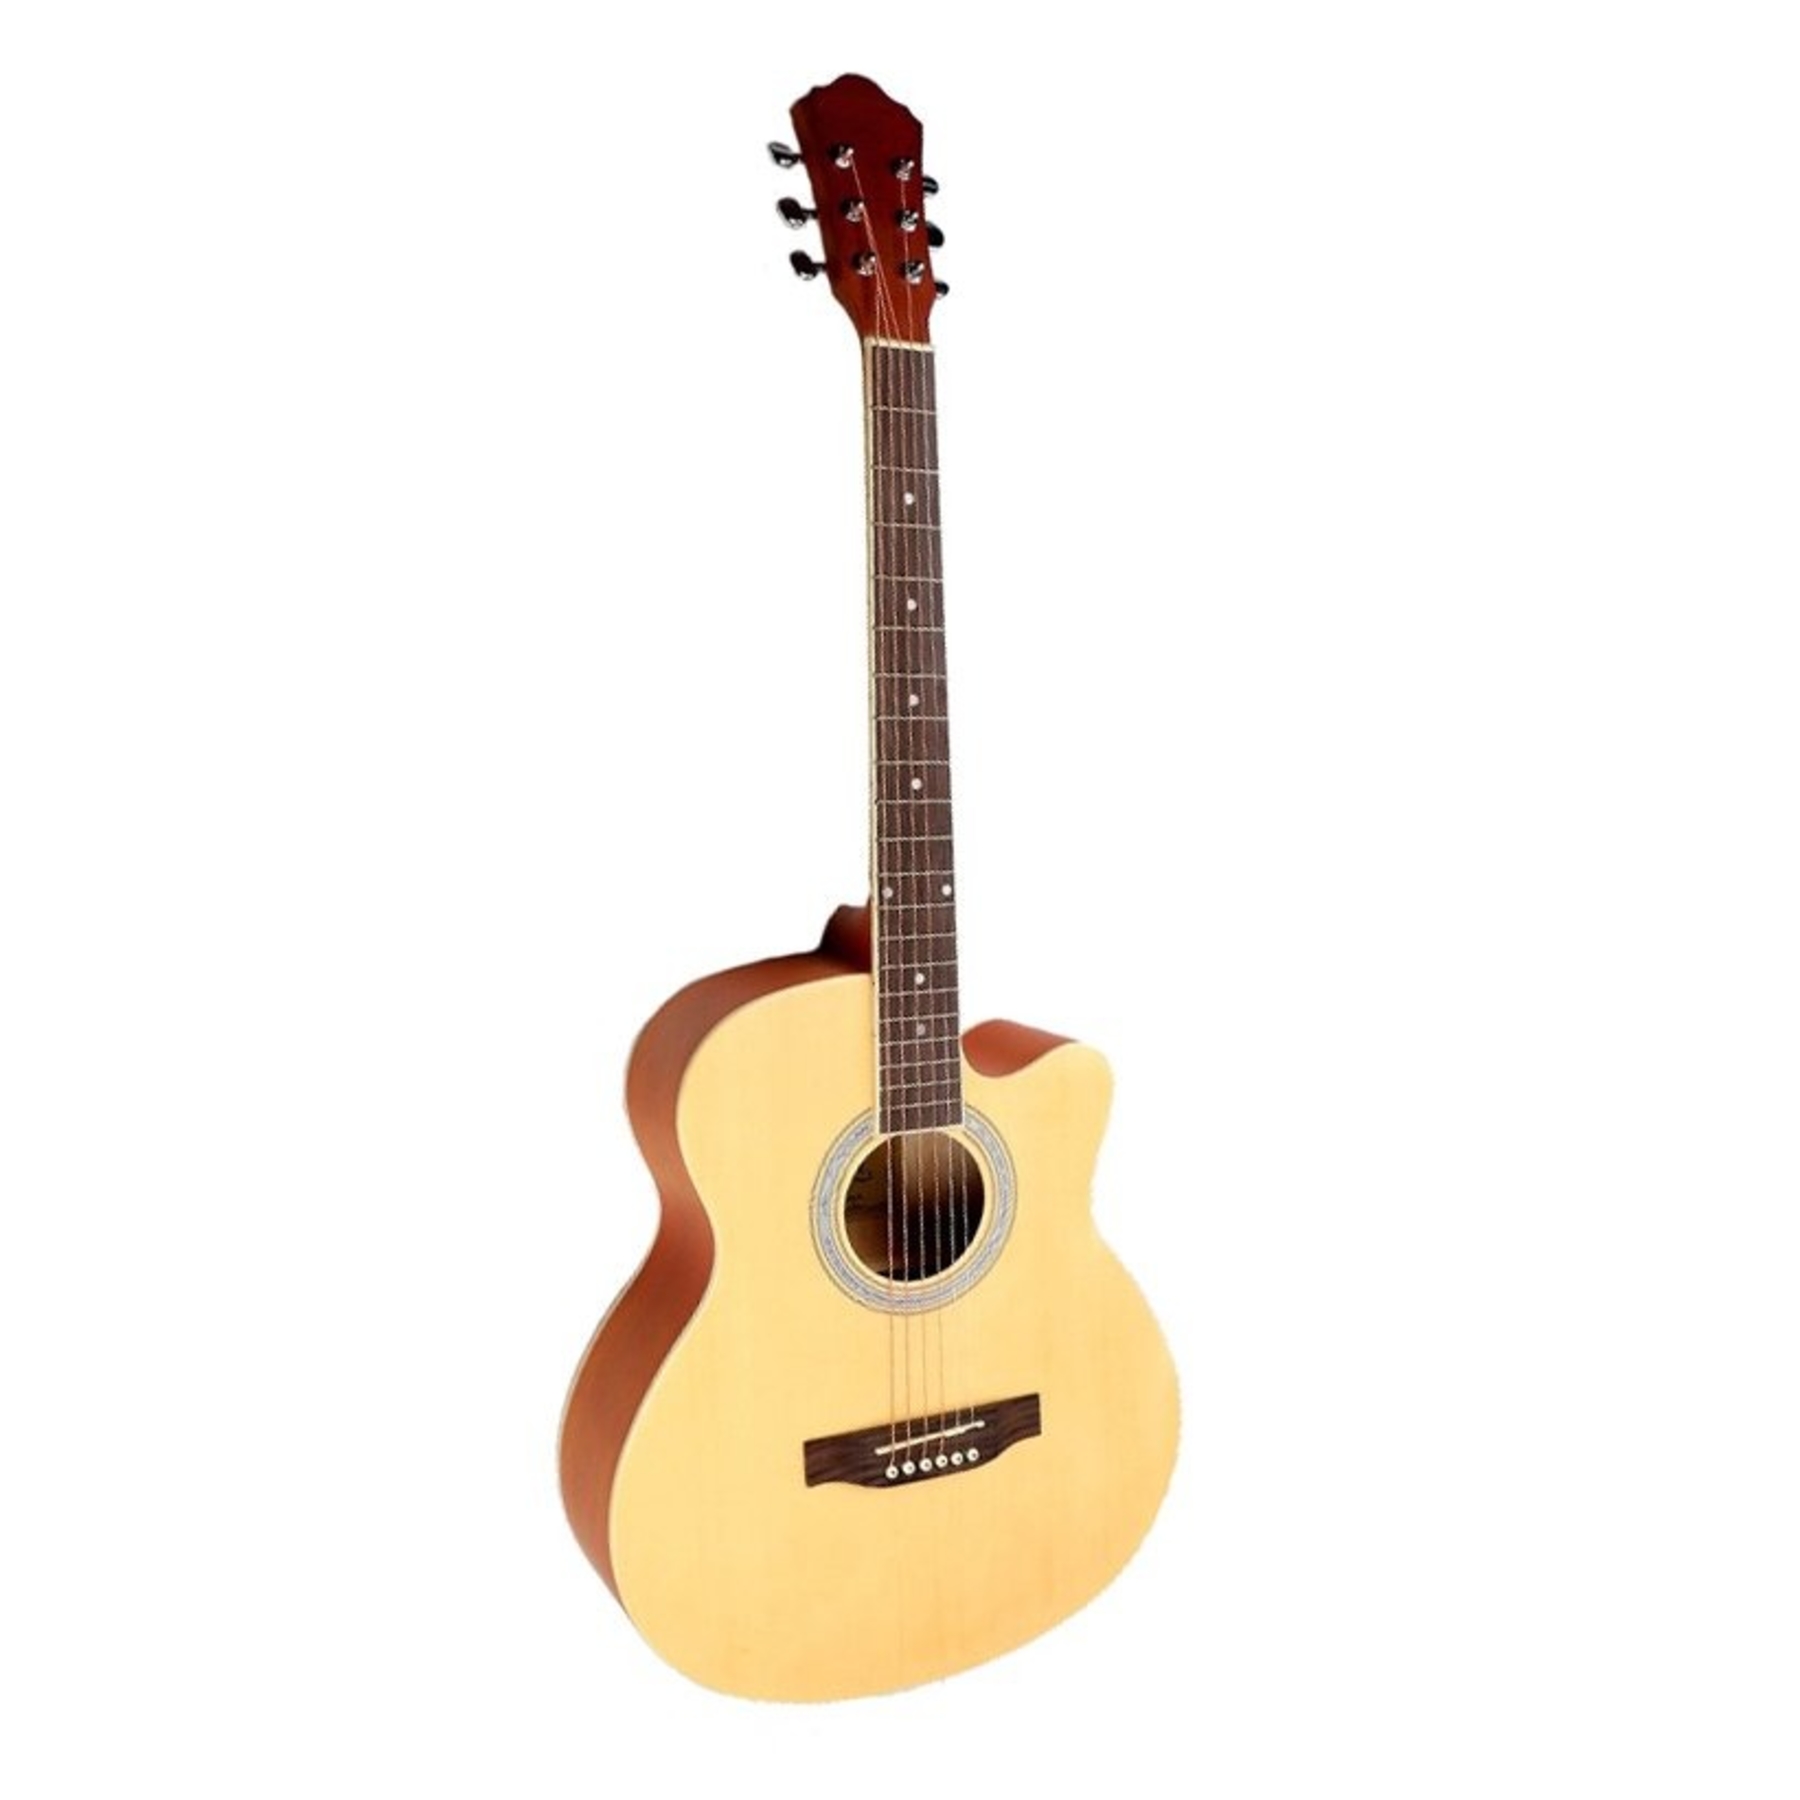 Акустические гитары Caravan K-4040 N гитара акустическая санберст 97см с вырезом